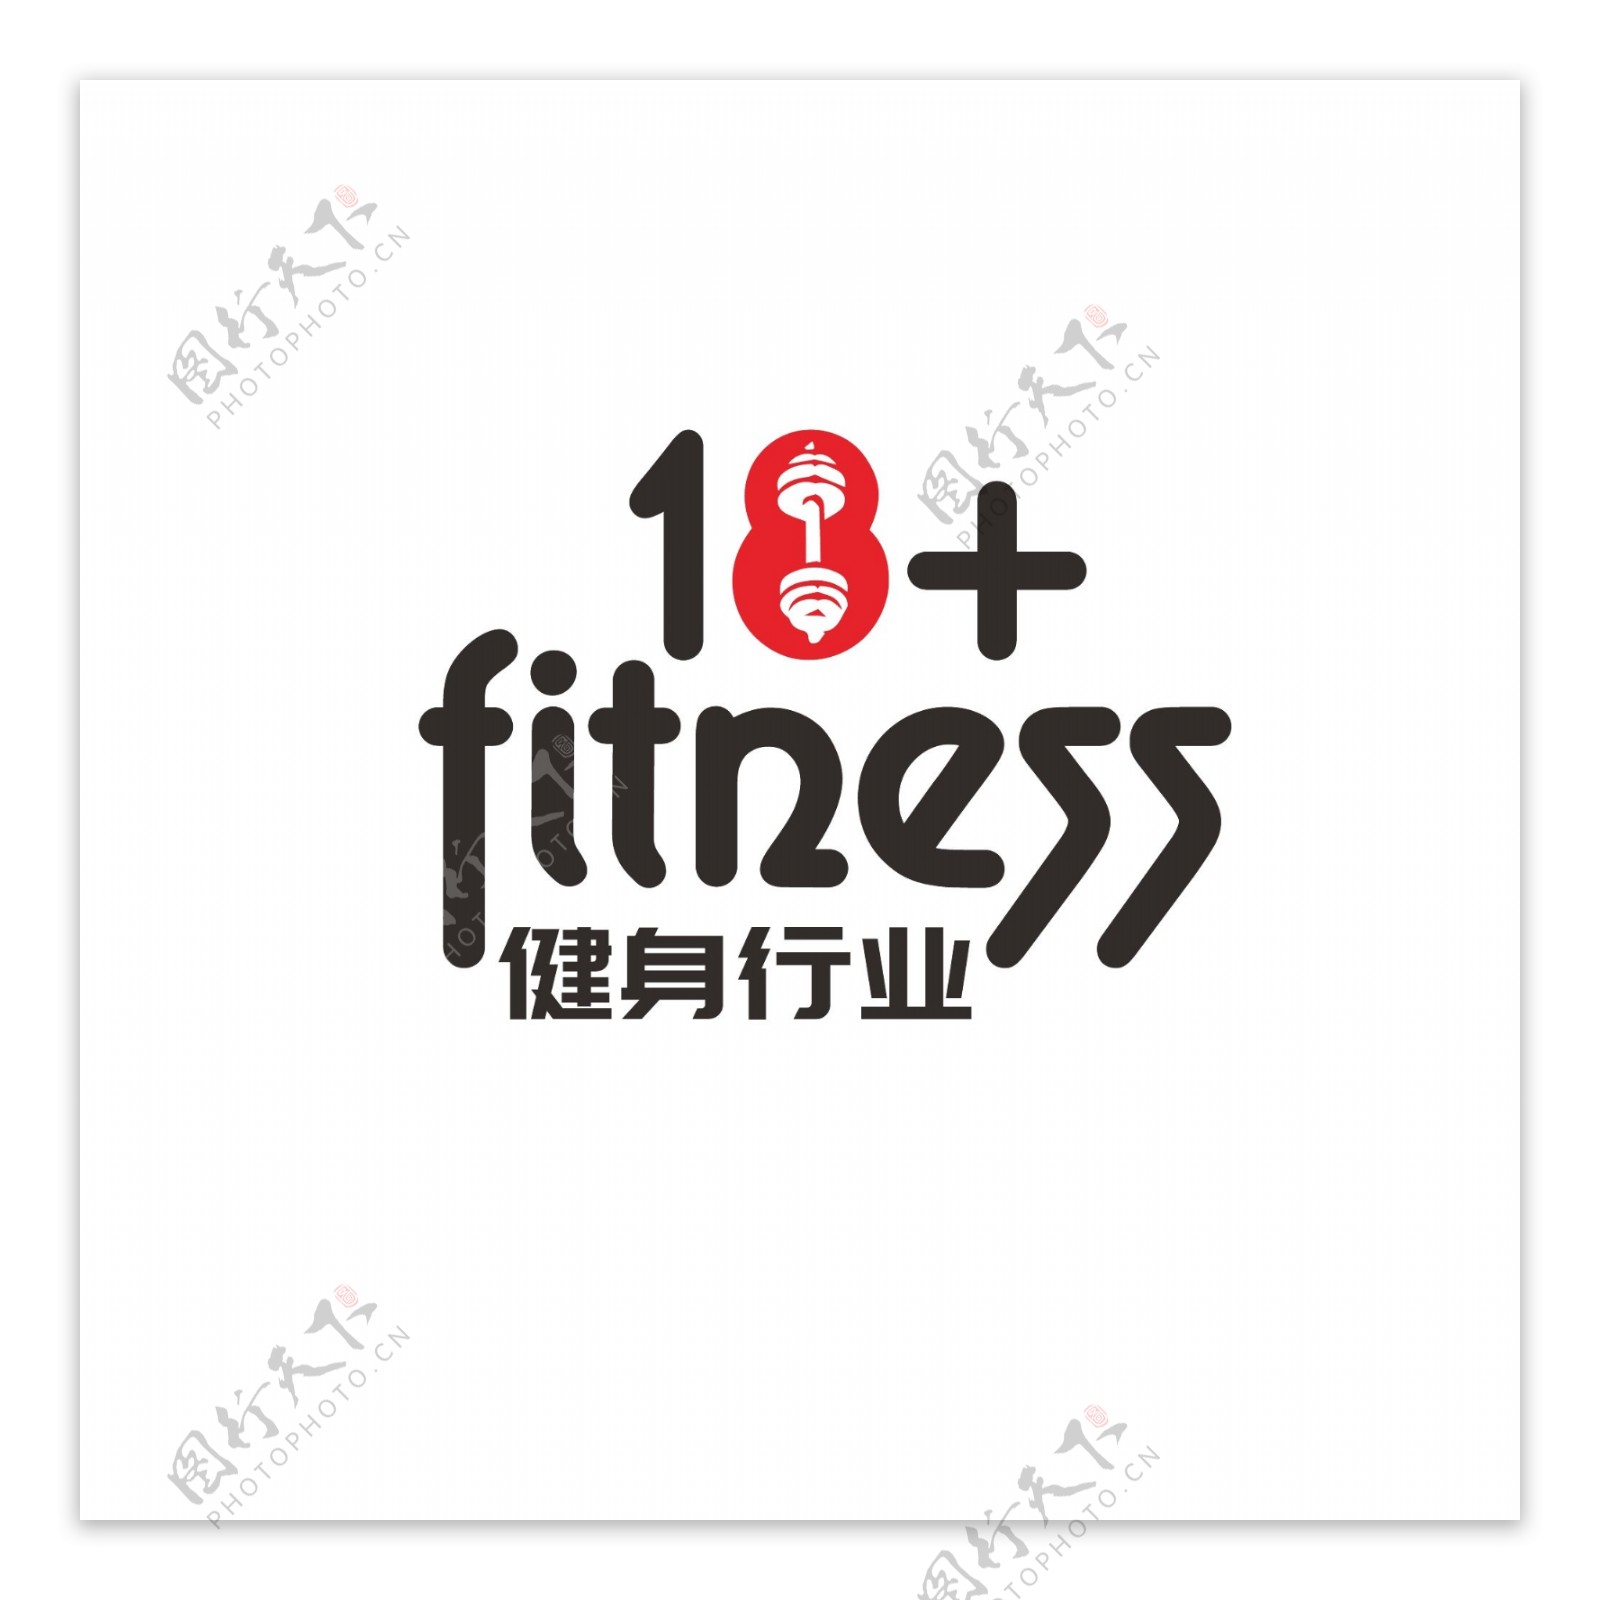 健身行业logo设计